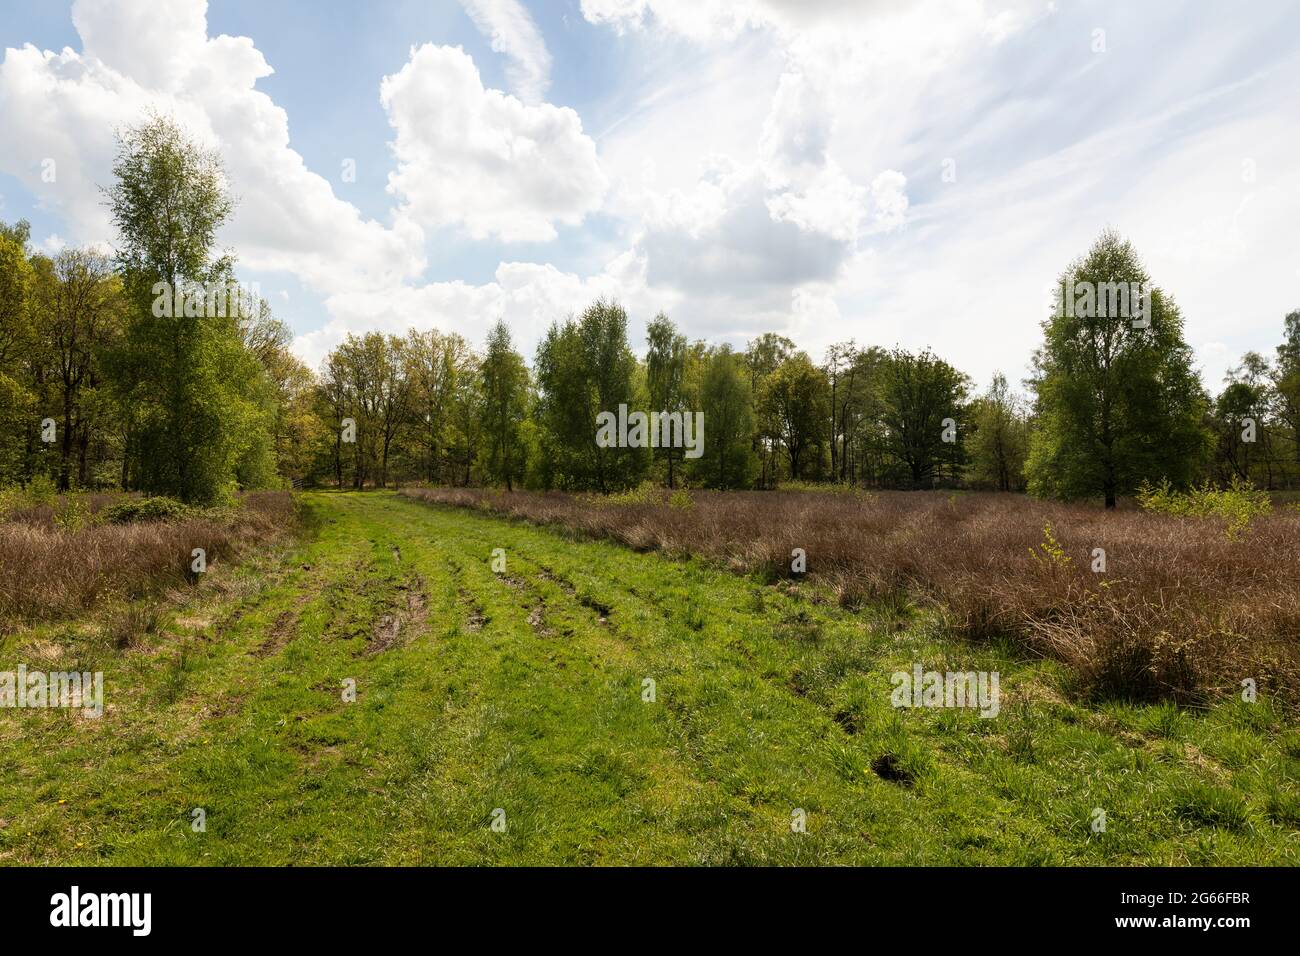 Torfgebiet De Peel, holländische Landschaft in den Niederlanden im Frühling mit schönem grünen Gras, Heidekraut, Bäumen und Grün an einem bewölkten Tag und einem Bl Stockfoto